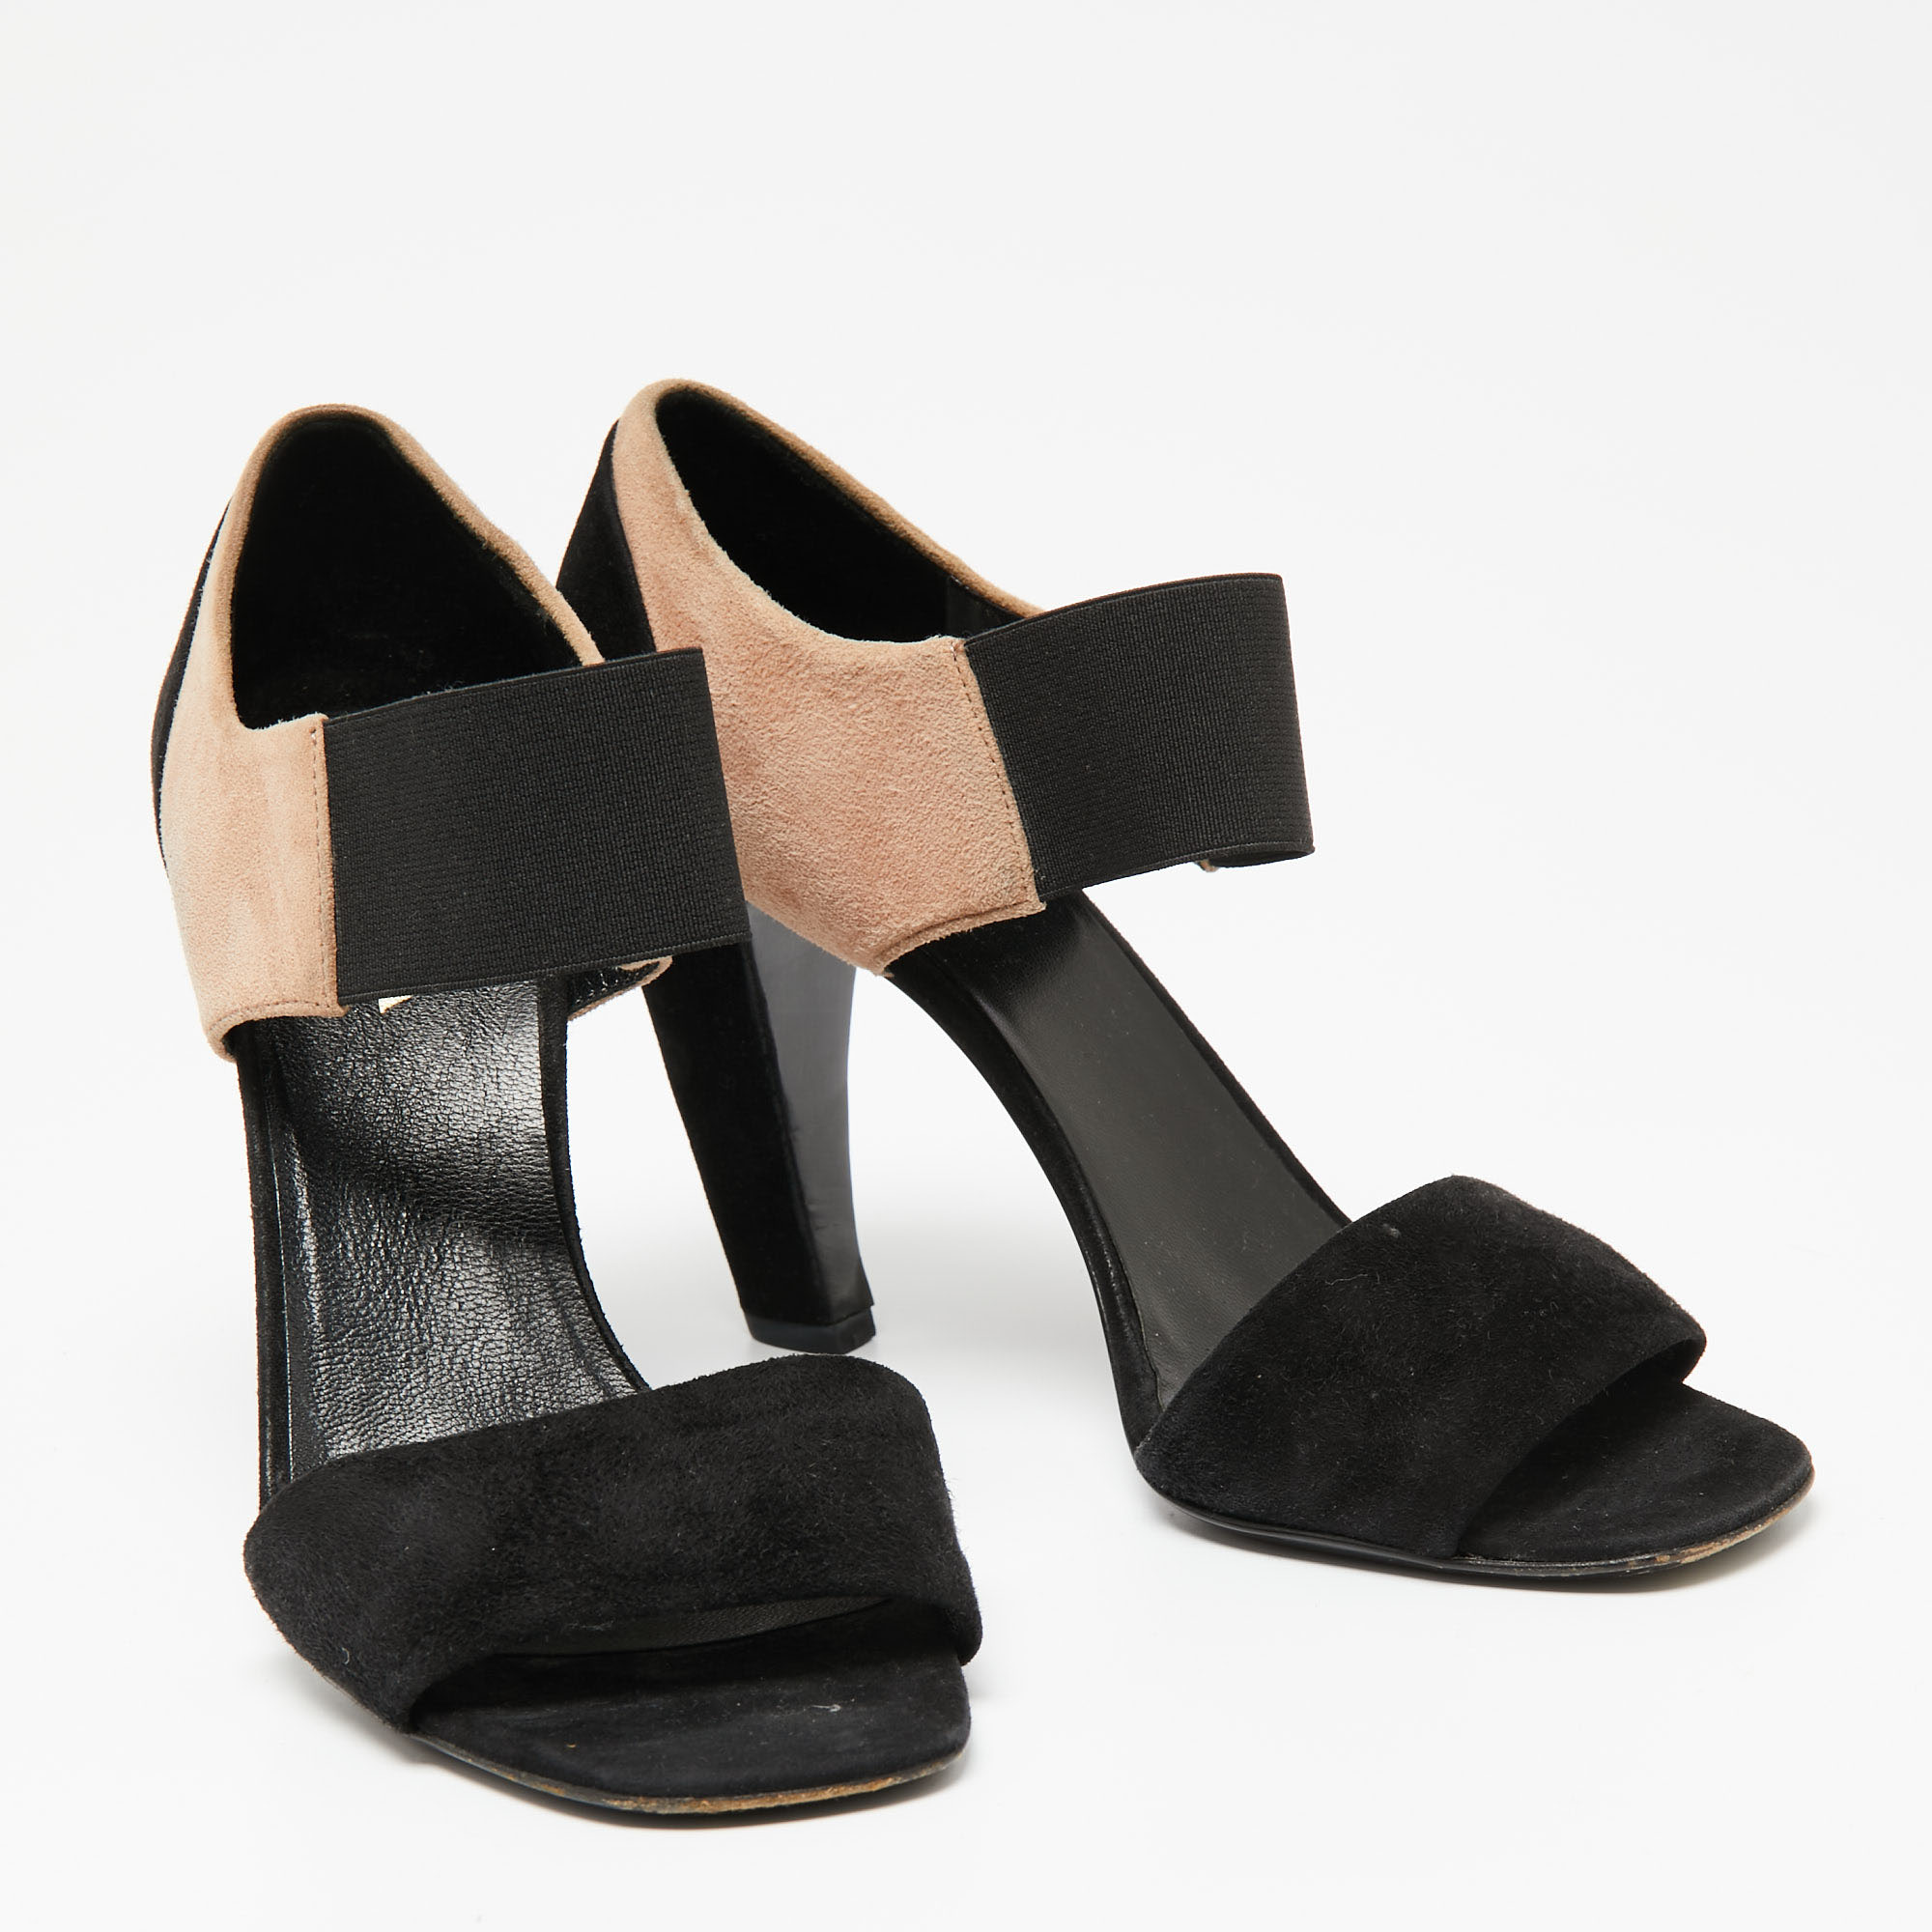 Prada Black/Beige Suede Ankle Strap Sandals Size 38